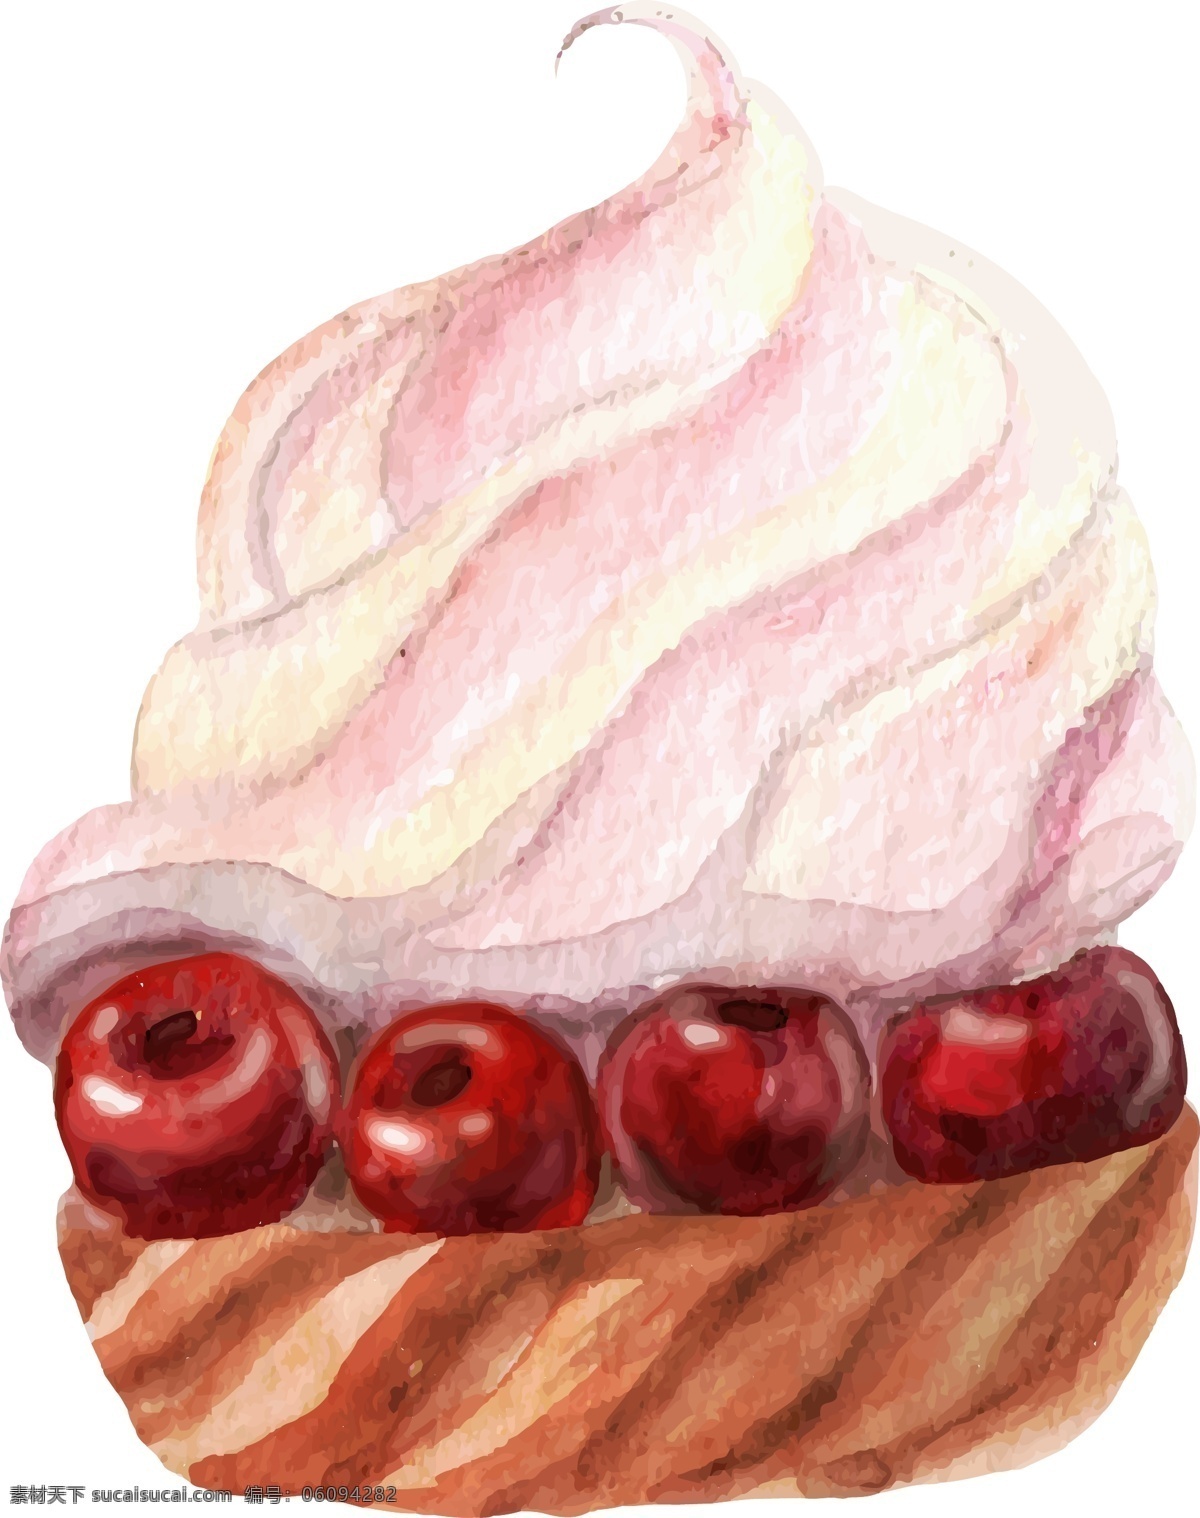 水彩 绘 美味 蛋糕 插画 甜品 水果 山楂 水彩绘